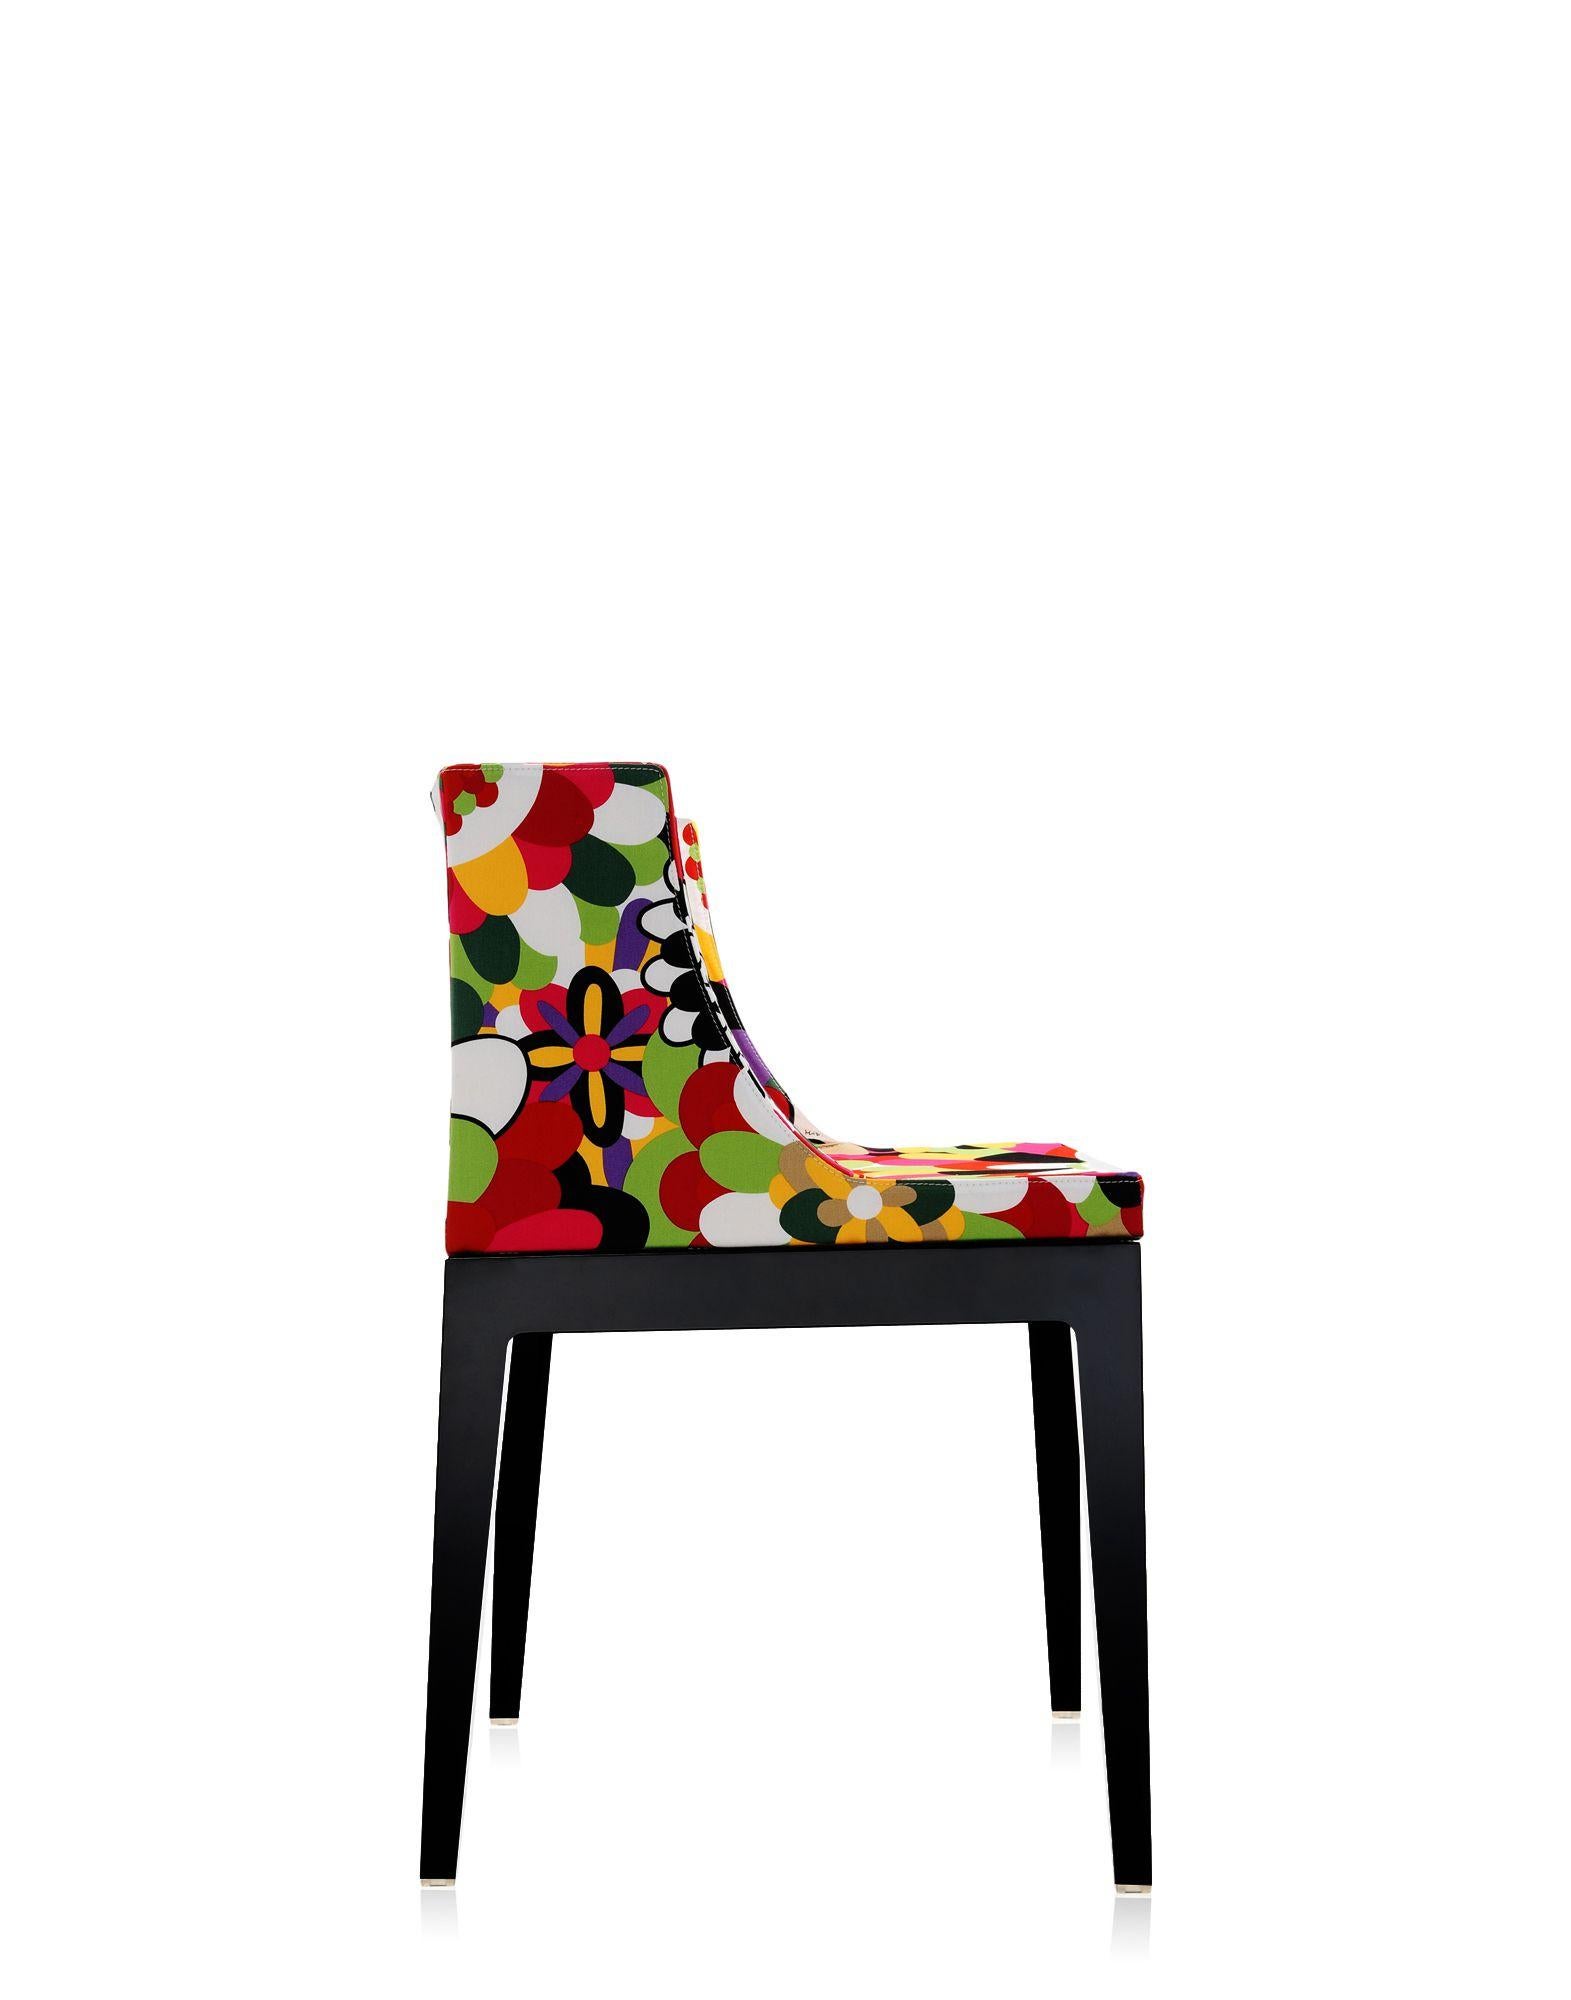 italien Kartell Mademoiselle « A La Mode » (La mode)  Chaise de Philippe Starck en vente